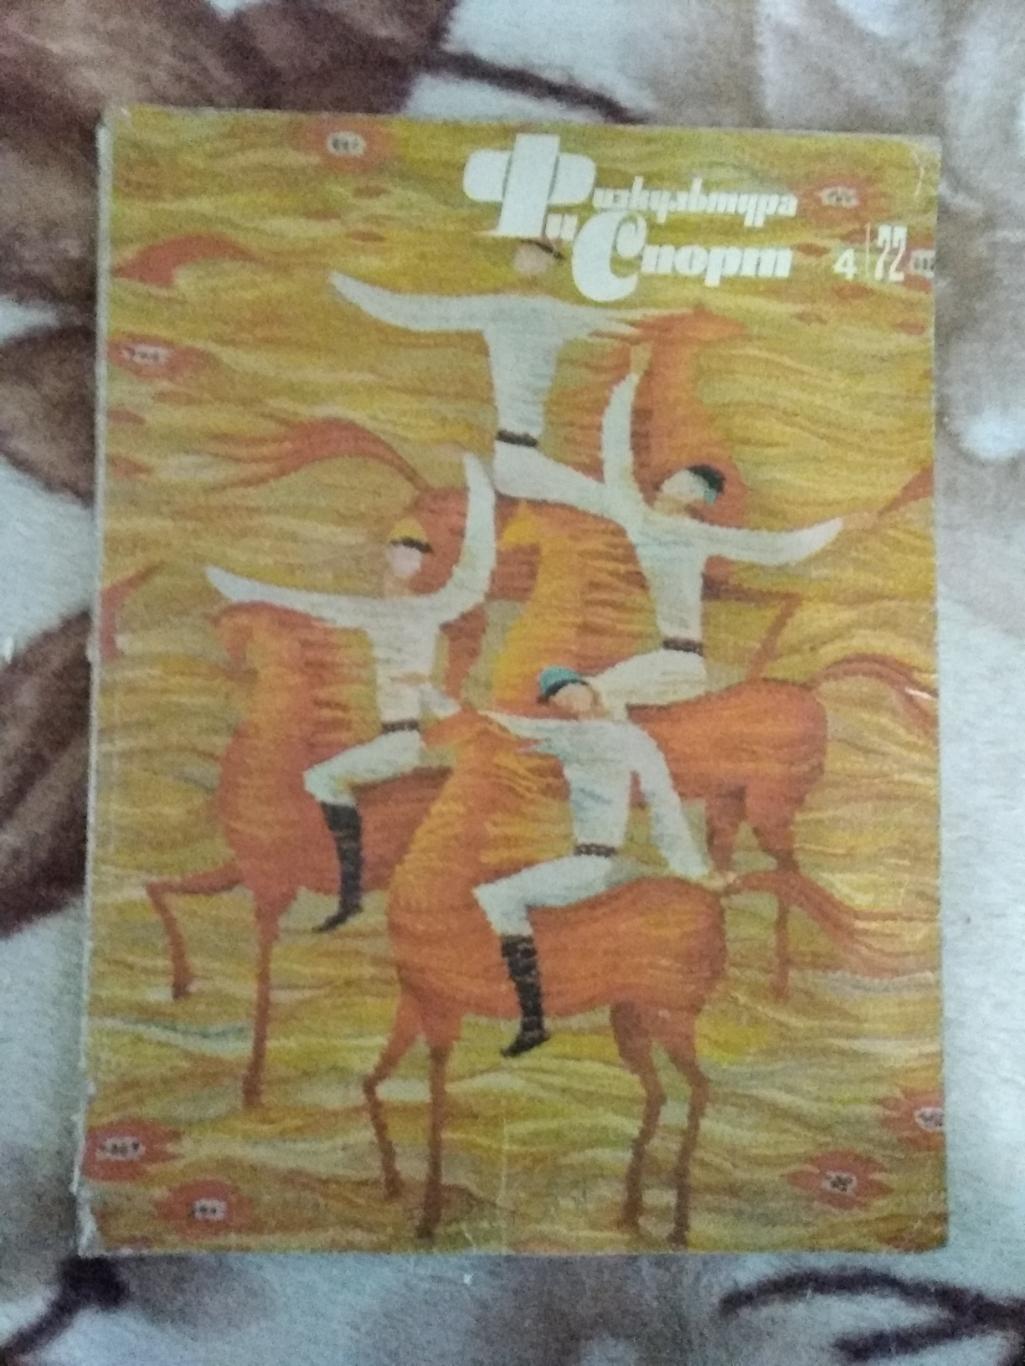 Журнал.Физкультура и спорт № 4 1972 г. (ФиС).(ОИ Саппоро.Япония).